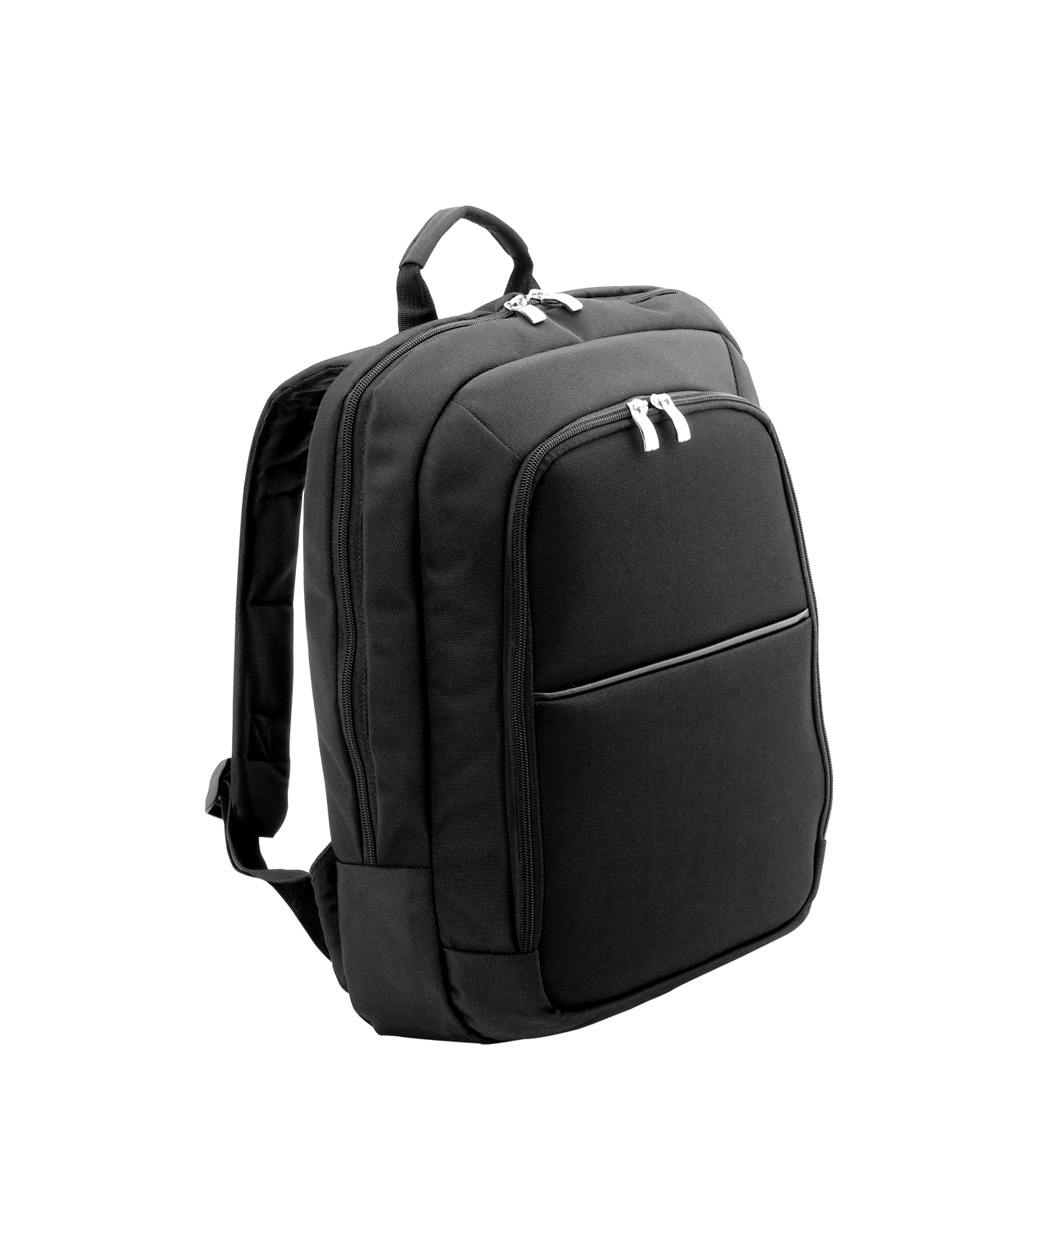 Eris backpack